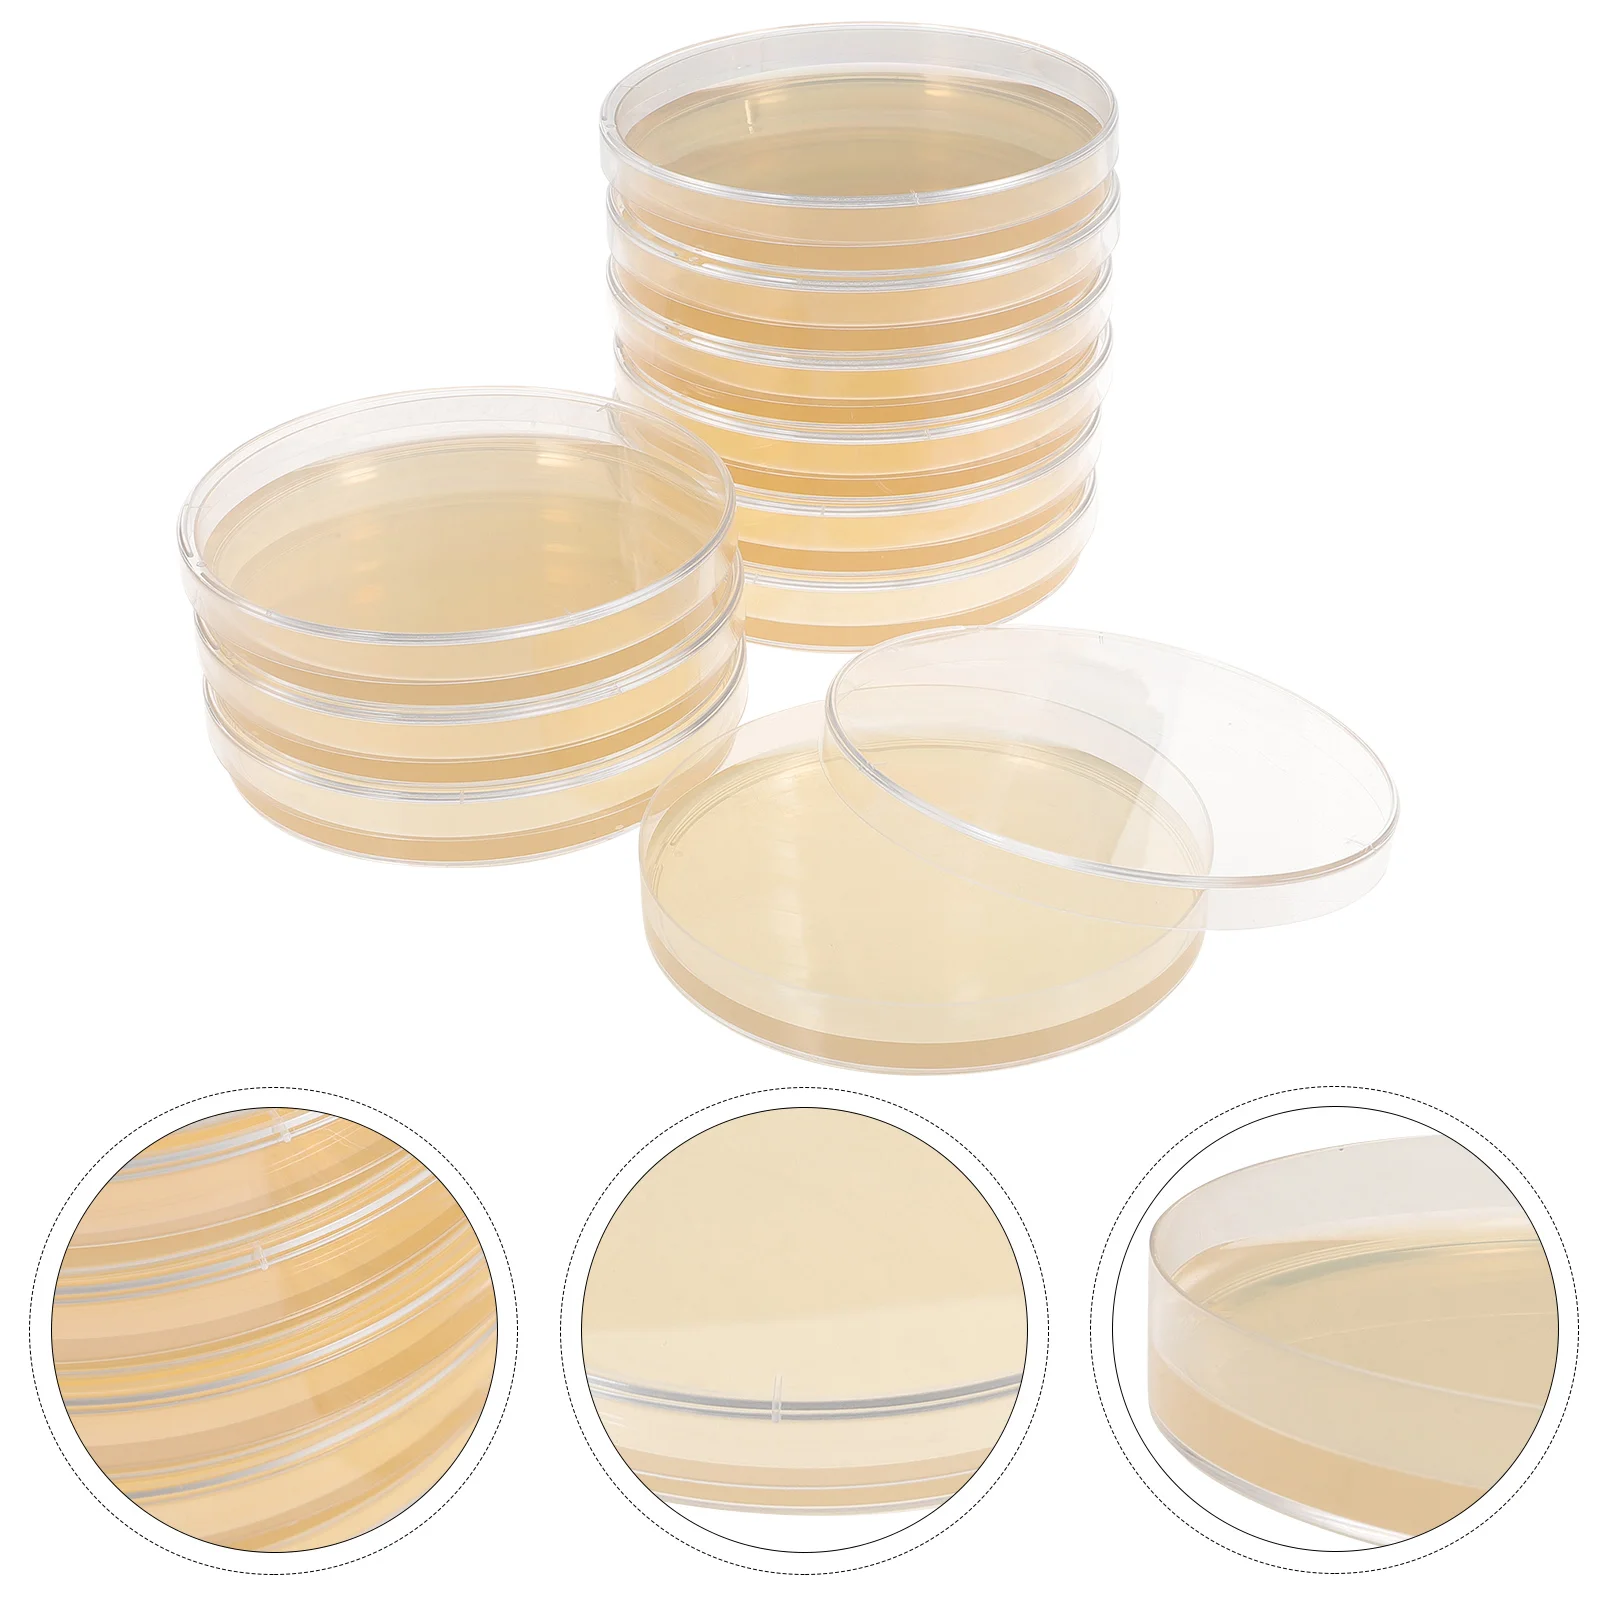 

Питательная агаровая тарелка, предварительно проливная чаша Петри, тарелки для культивирования тканей, лабораторные принадлежности, тарелки, портативные экспериментные грибы